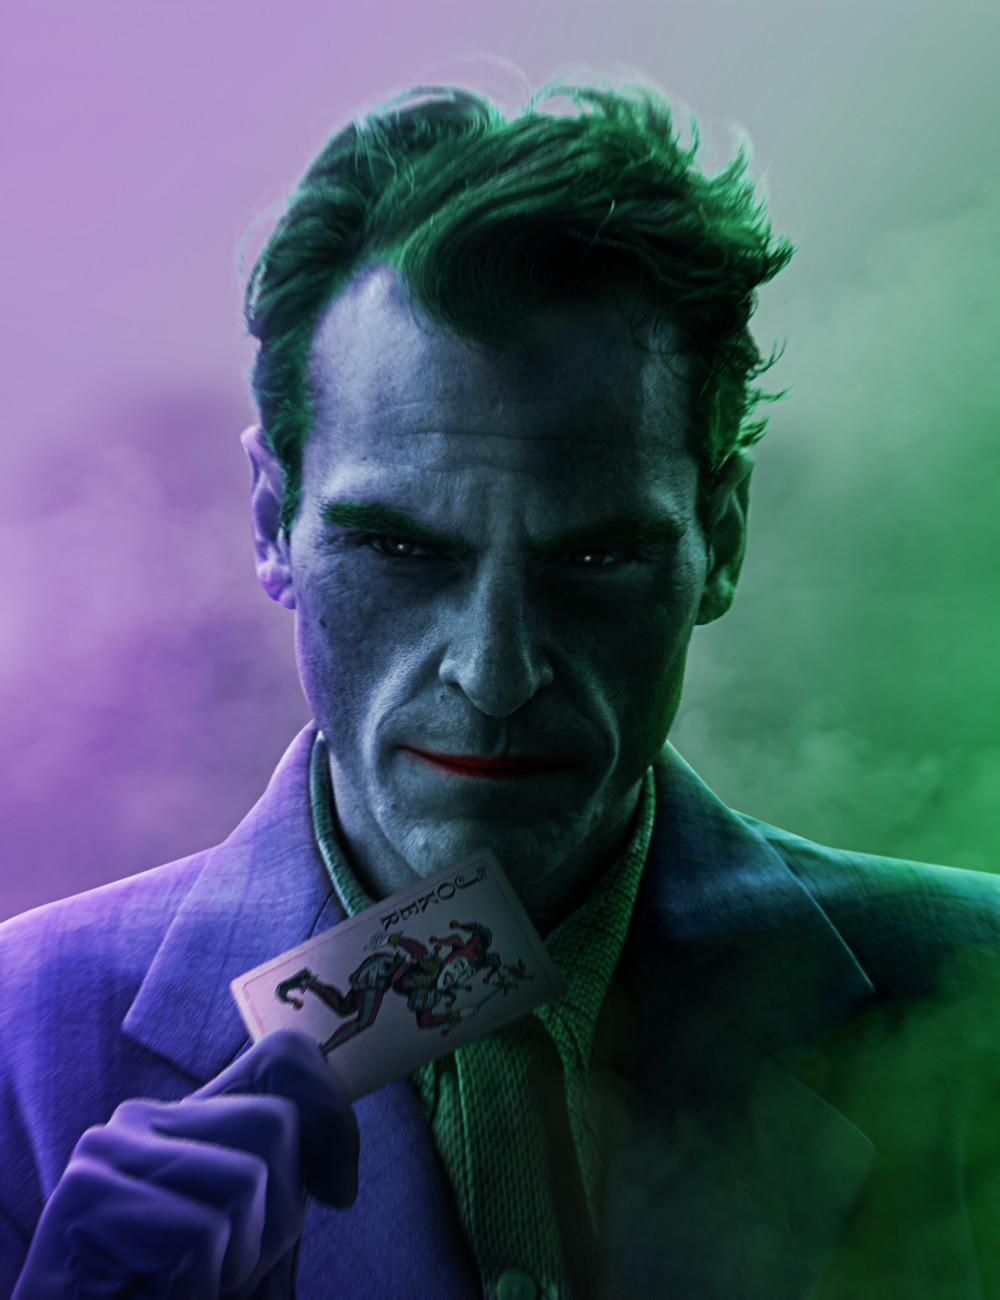 Joker 2019 Wallpaper High Quality